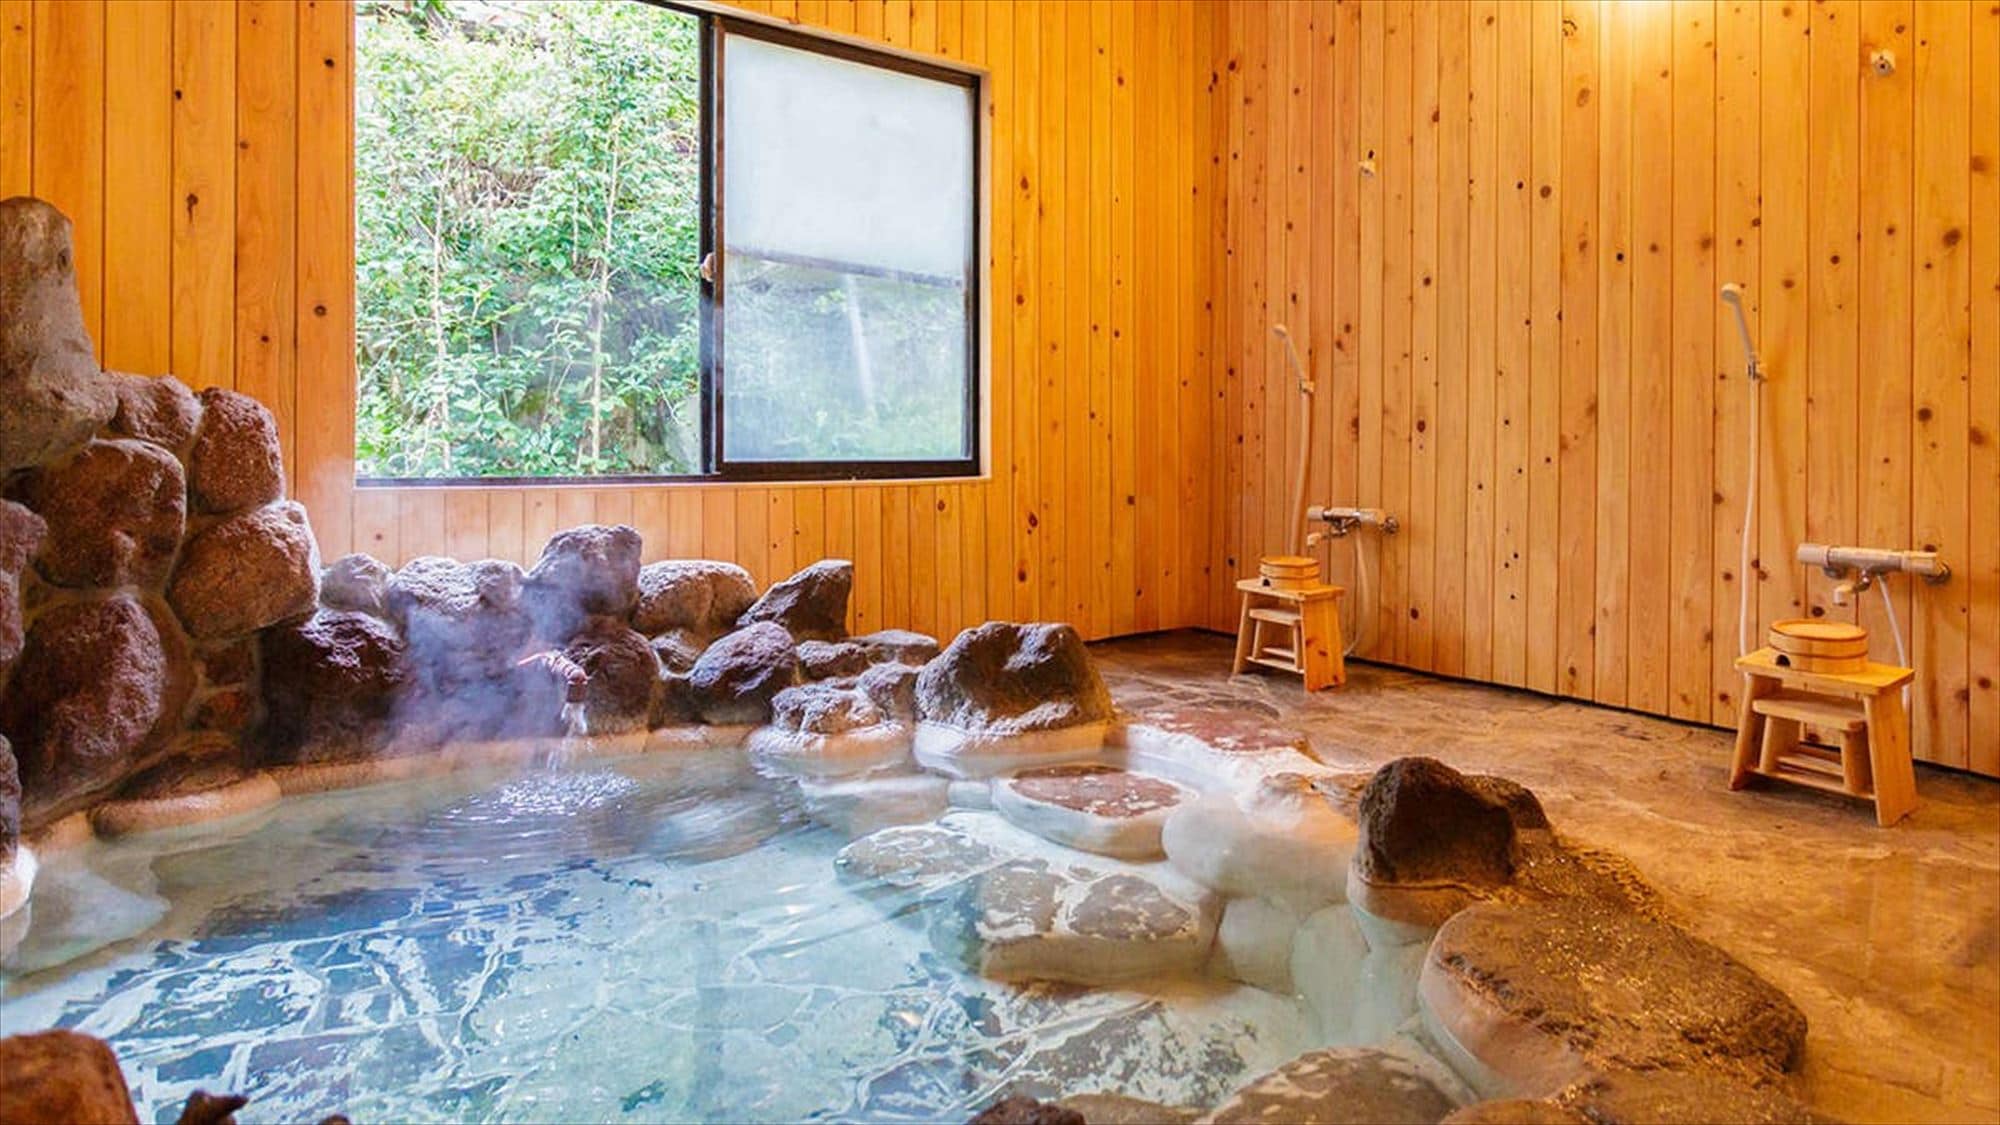 [包租浴] 岩浴有兩個私人浴池。酒店客人免費。